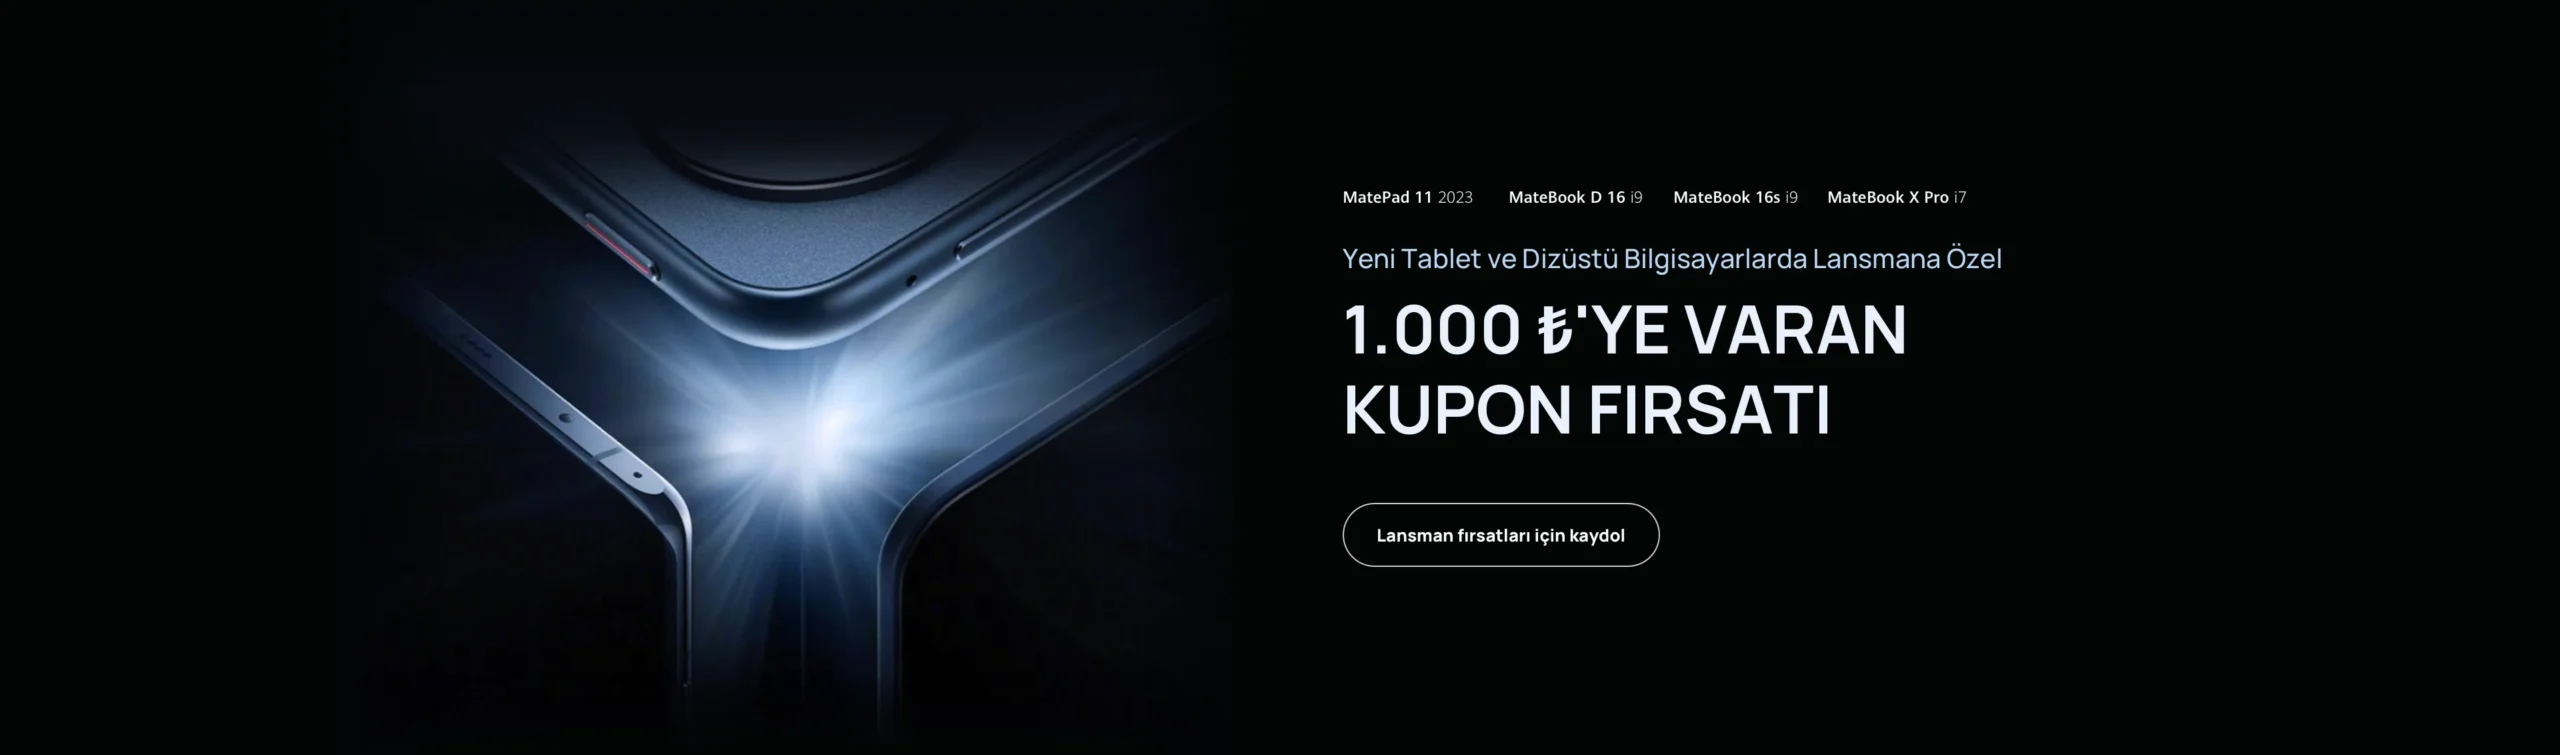 Huawei, Yeni MateBook Serisini ve MatePad 11 2023’ü Türkiye’de Piyasaya Sürecek